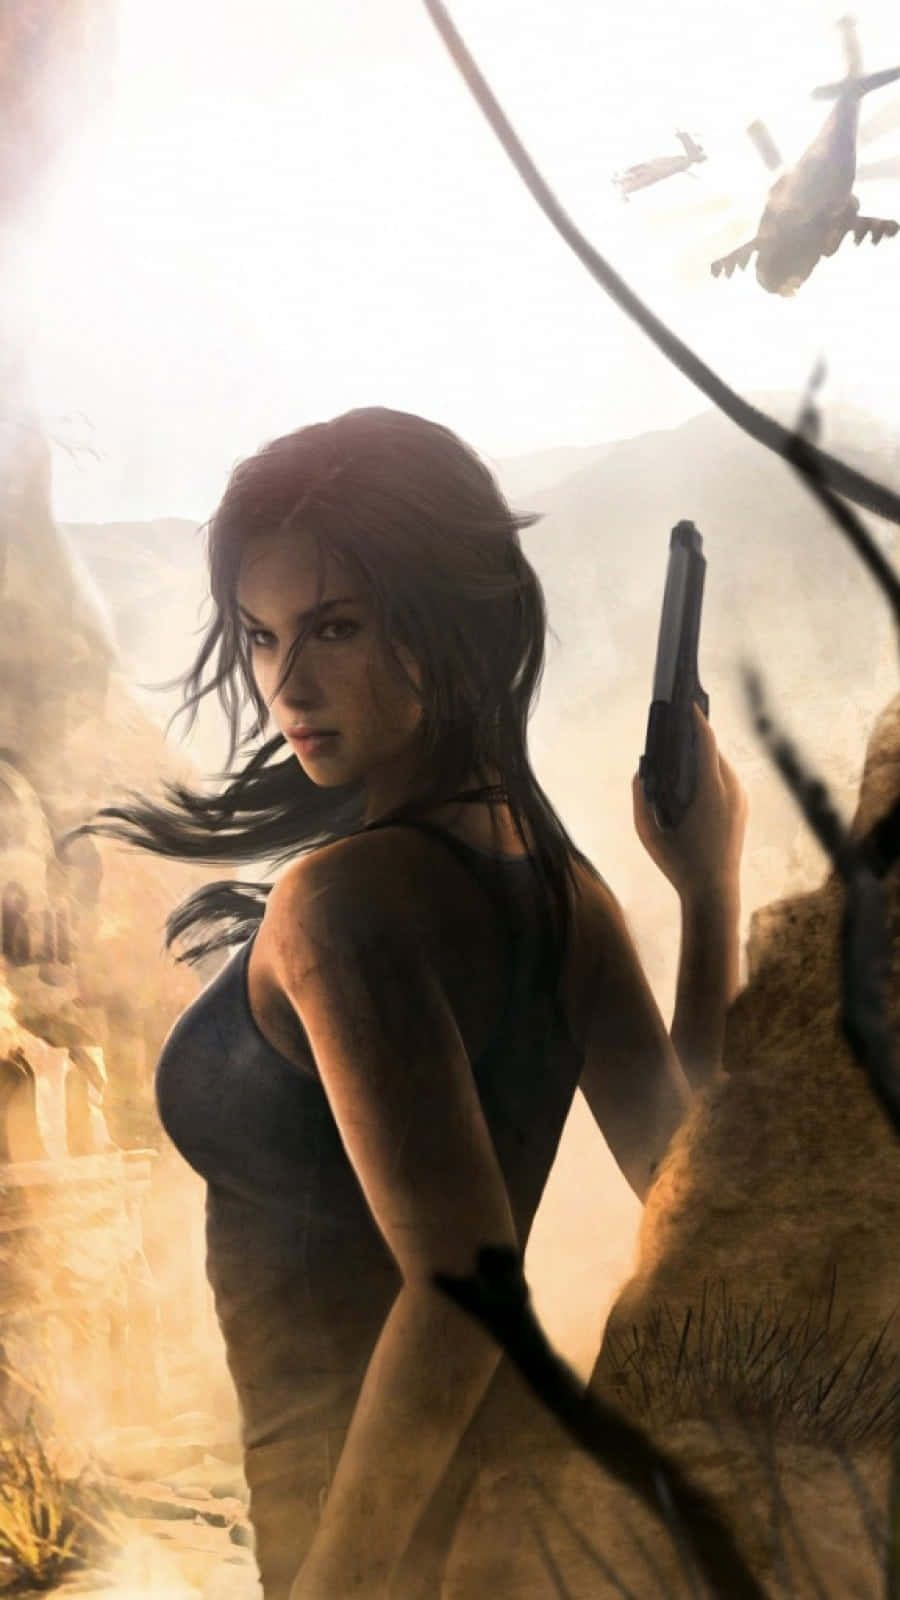 Androidbakgrundsbild För Rise Of The Tomb Raider Med Gevär.